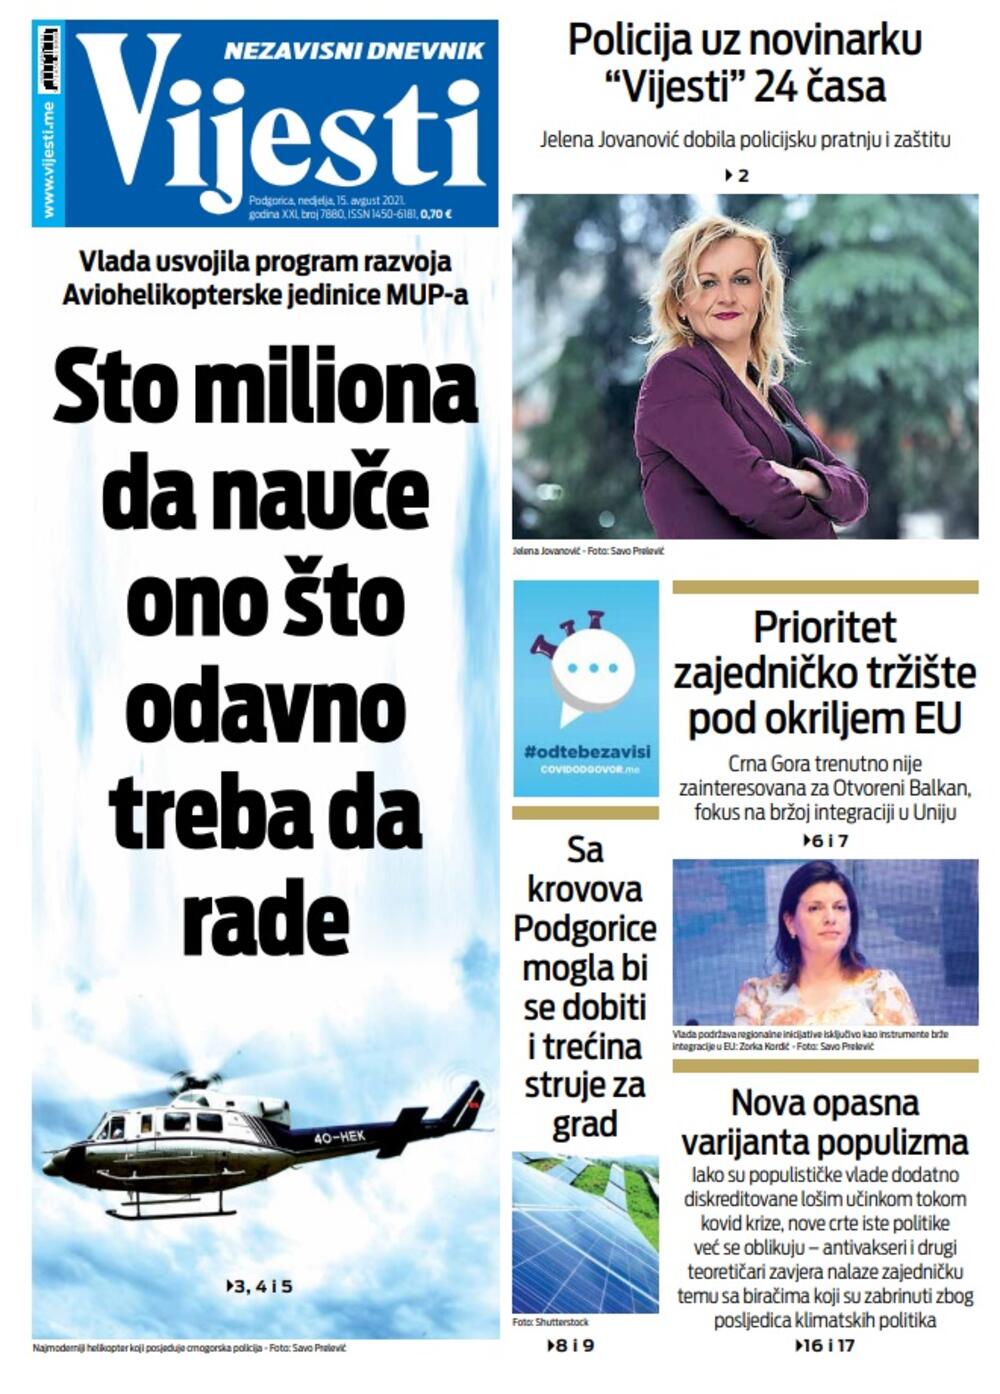 Naslovna strana "Vijesti" za nedjelju 15. avgust 2021. godine, Foto: Vijesti